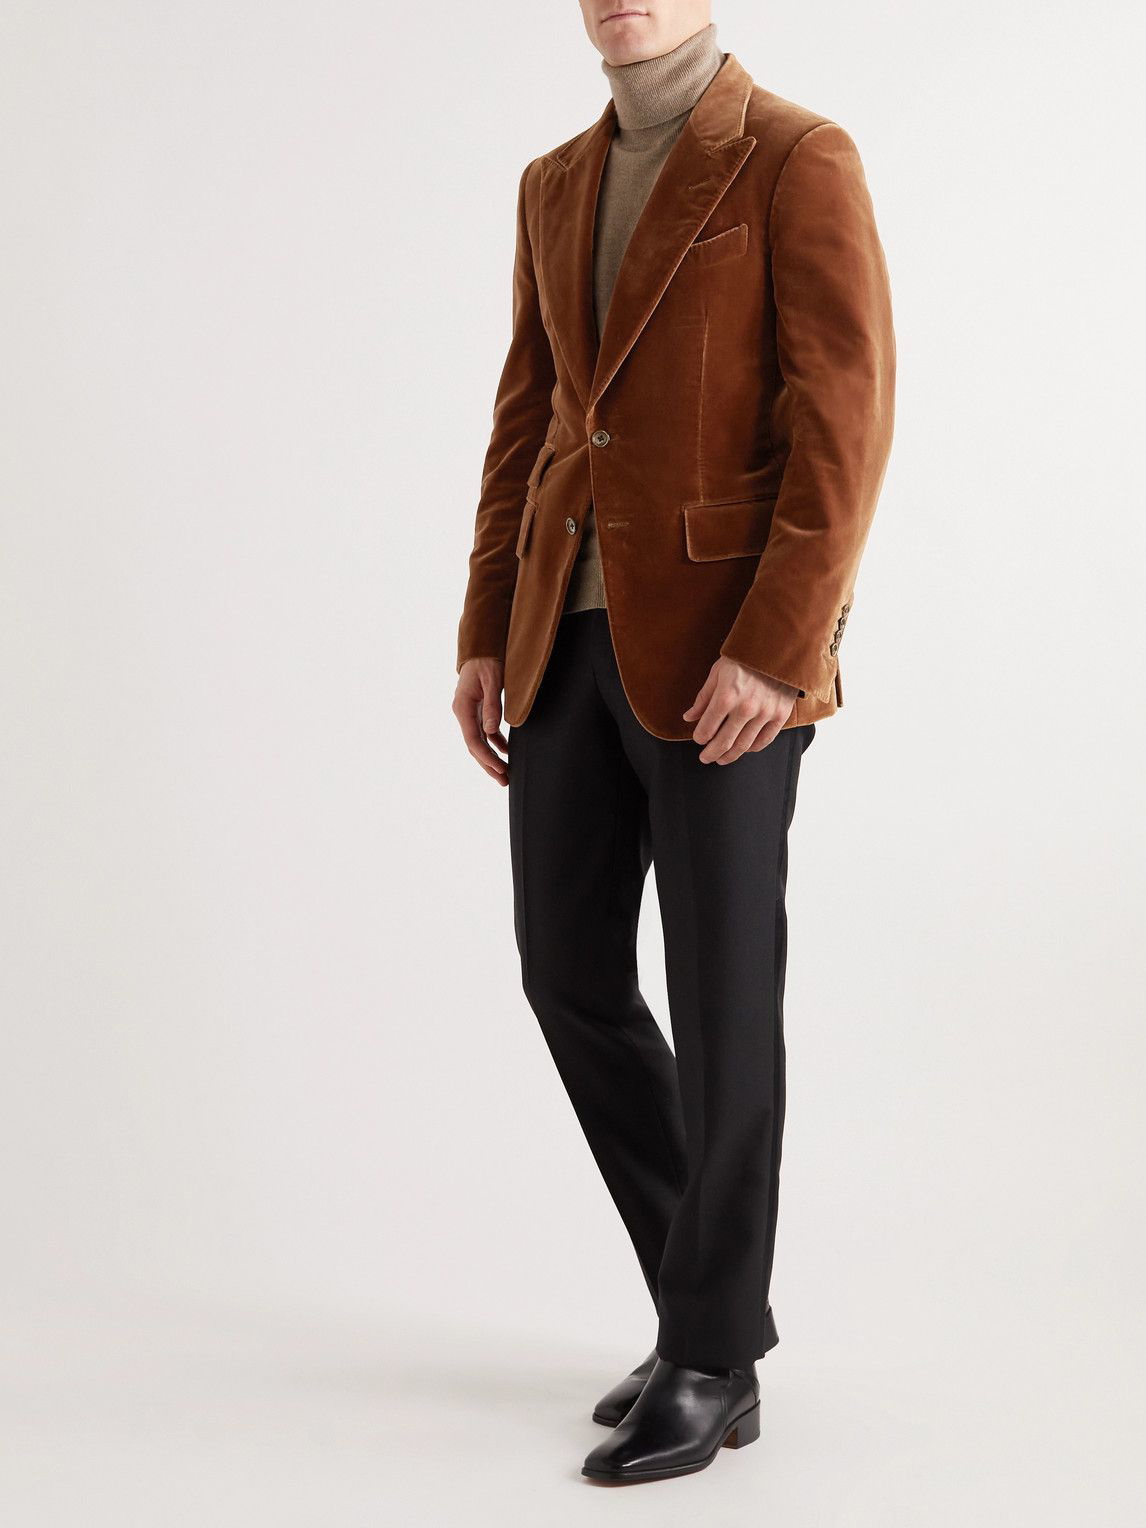 Tom Ford Men's Slim-Fit Cotton-Velvet Blazer